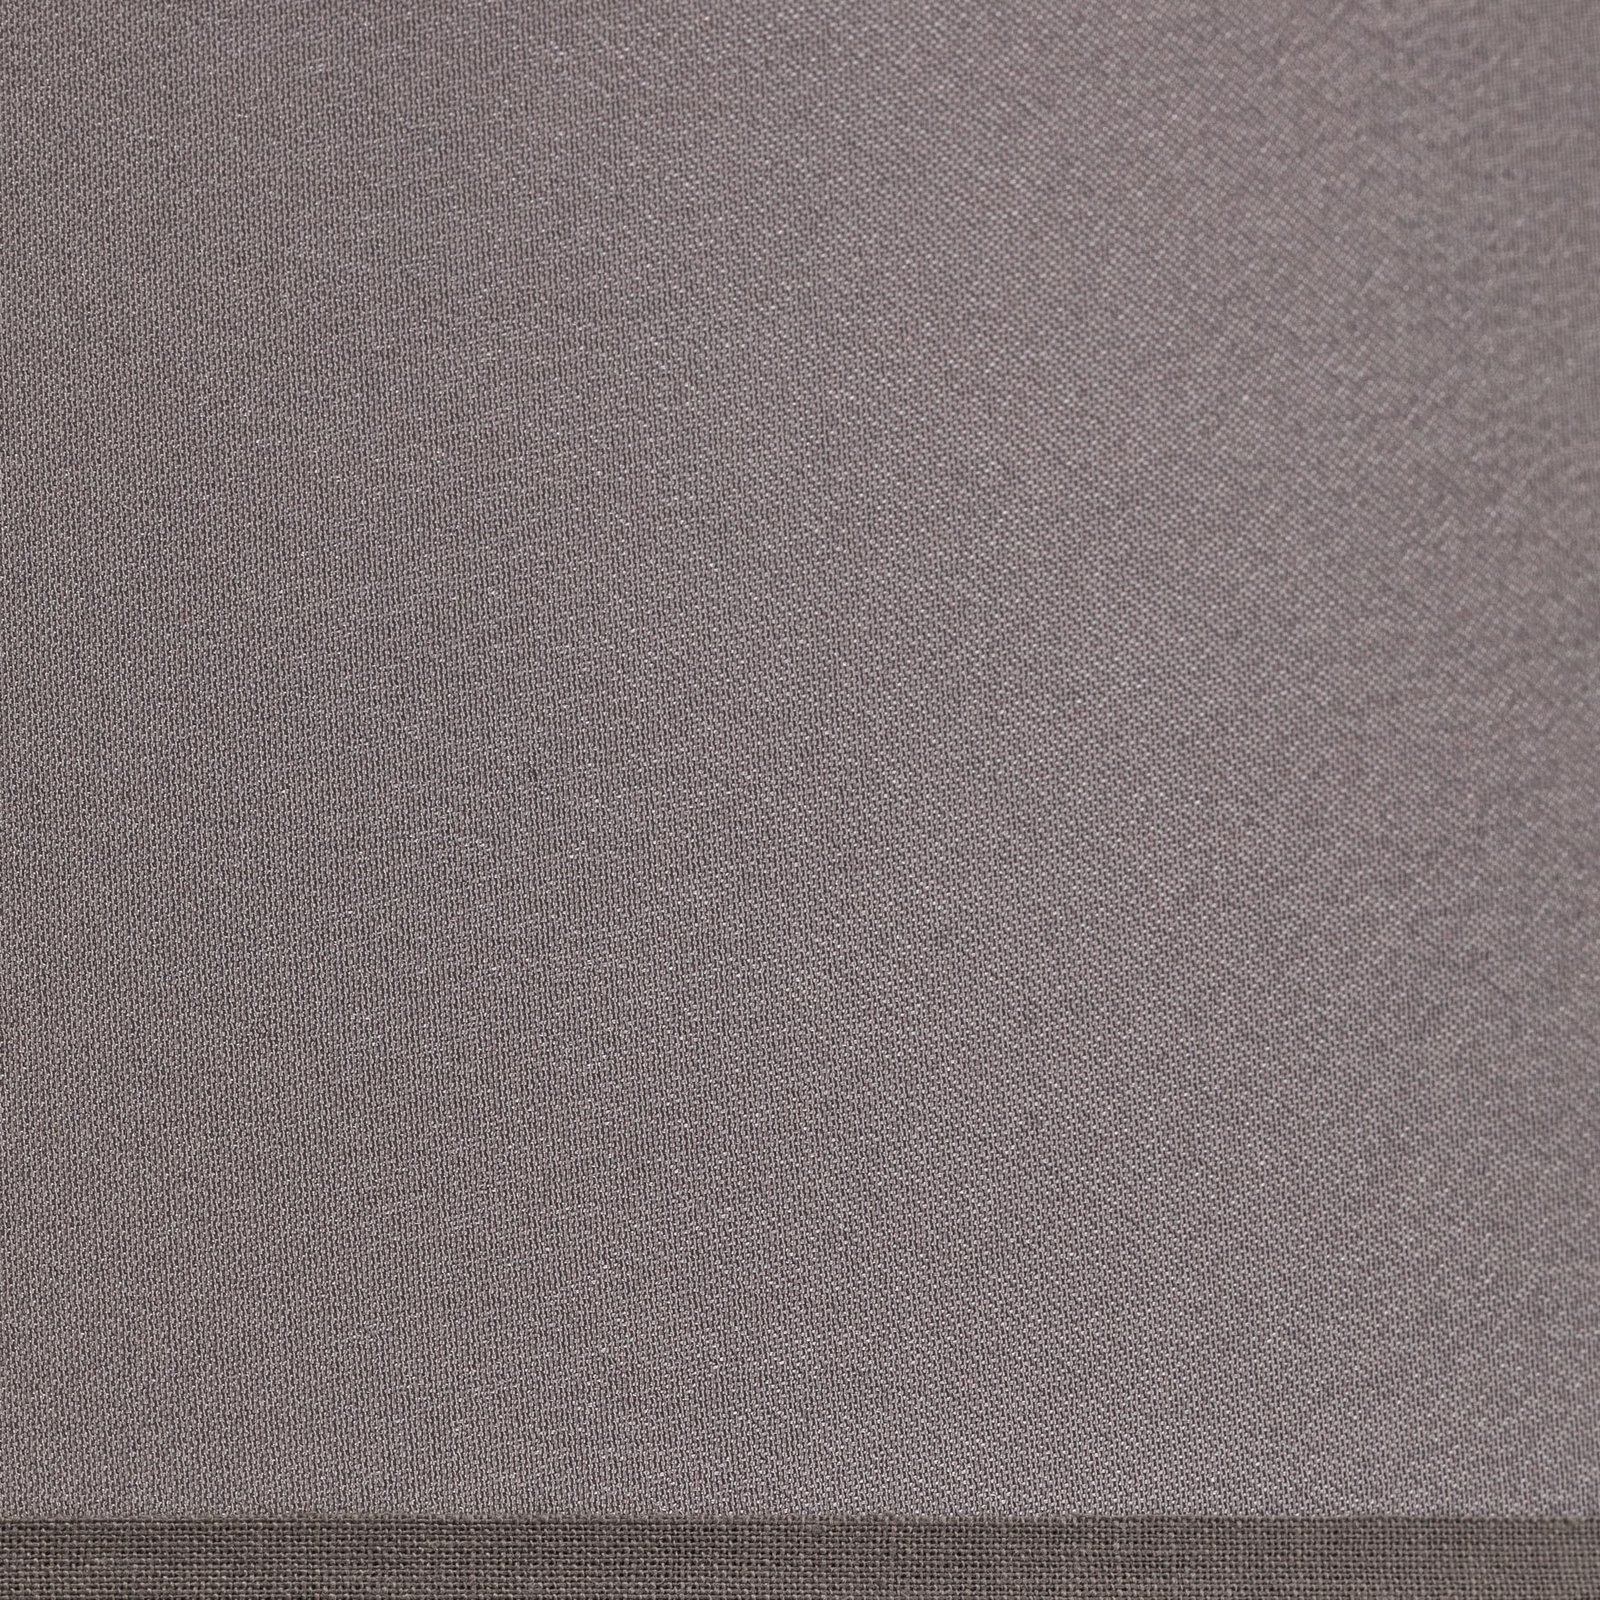 Lampenschirm Cone Höhe 22,5 cm, Chintz grau/weiß